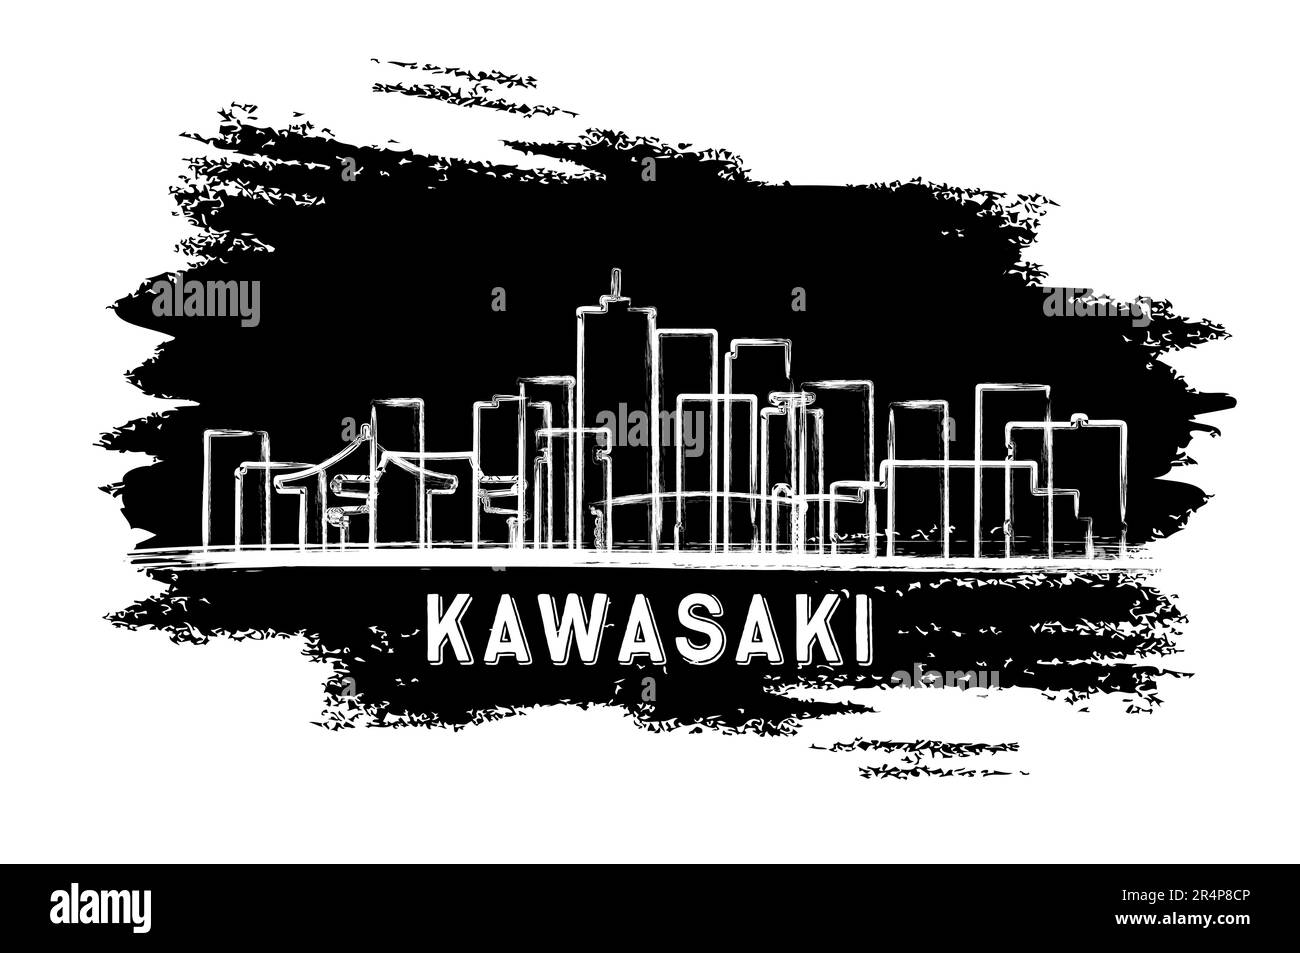 Silhouette de la ville aérienne de Kawasaki Japan. Esquisse dessinée à la main. Voyages d'affaires et tourisme concept avec architecture moderne. Illustration vectorielle. Kawasaki Illustration de Vecteur